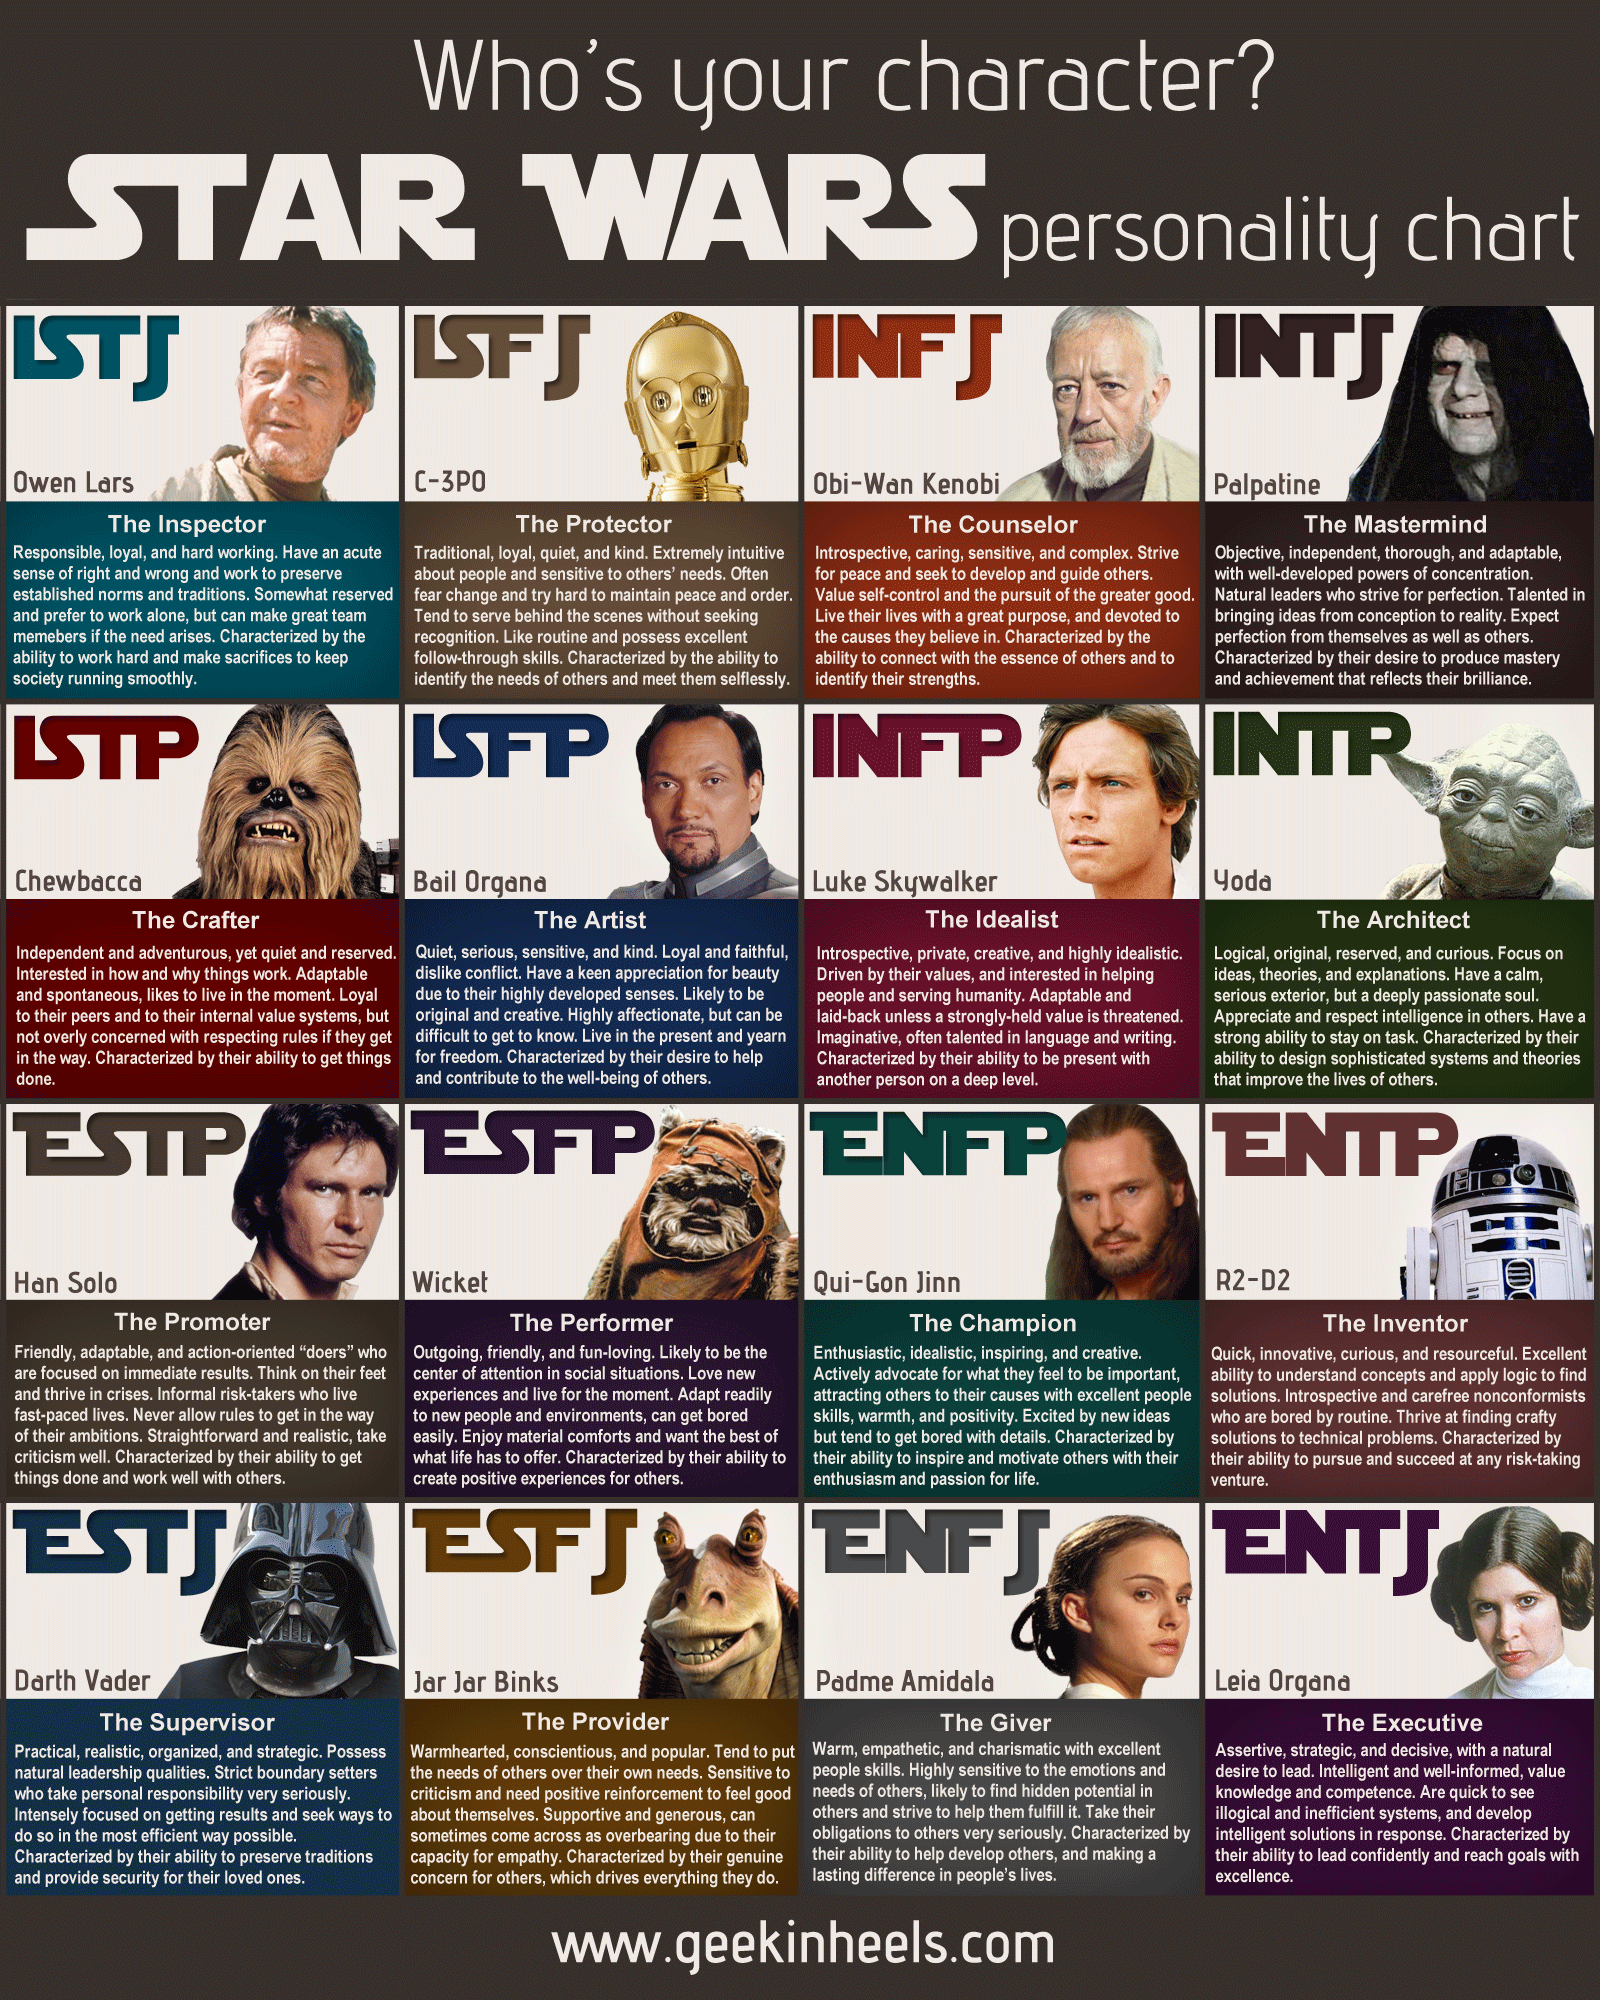 Star Wars MBTI Chart – Like An Anchor